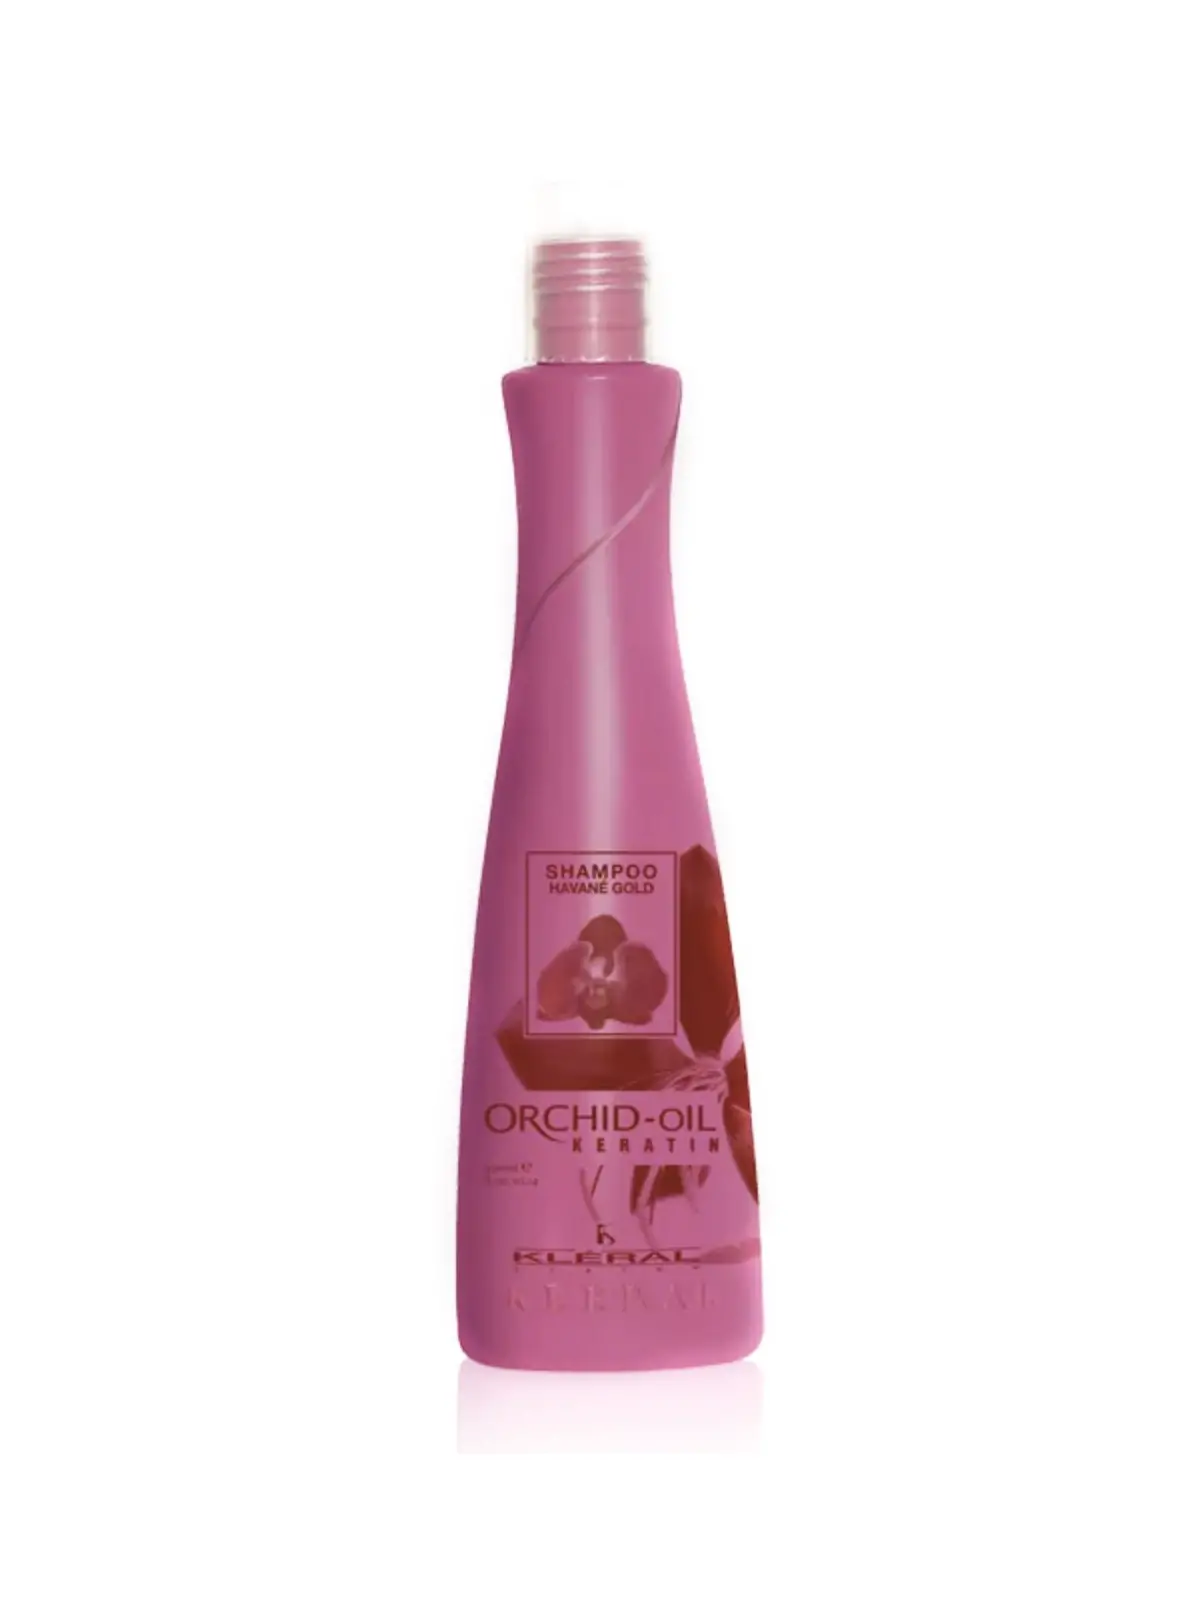 Kléral Orchid Oil shampoo 300 ml 5,82 € -30%